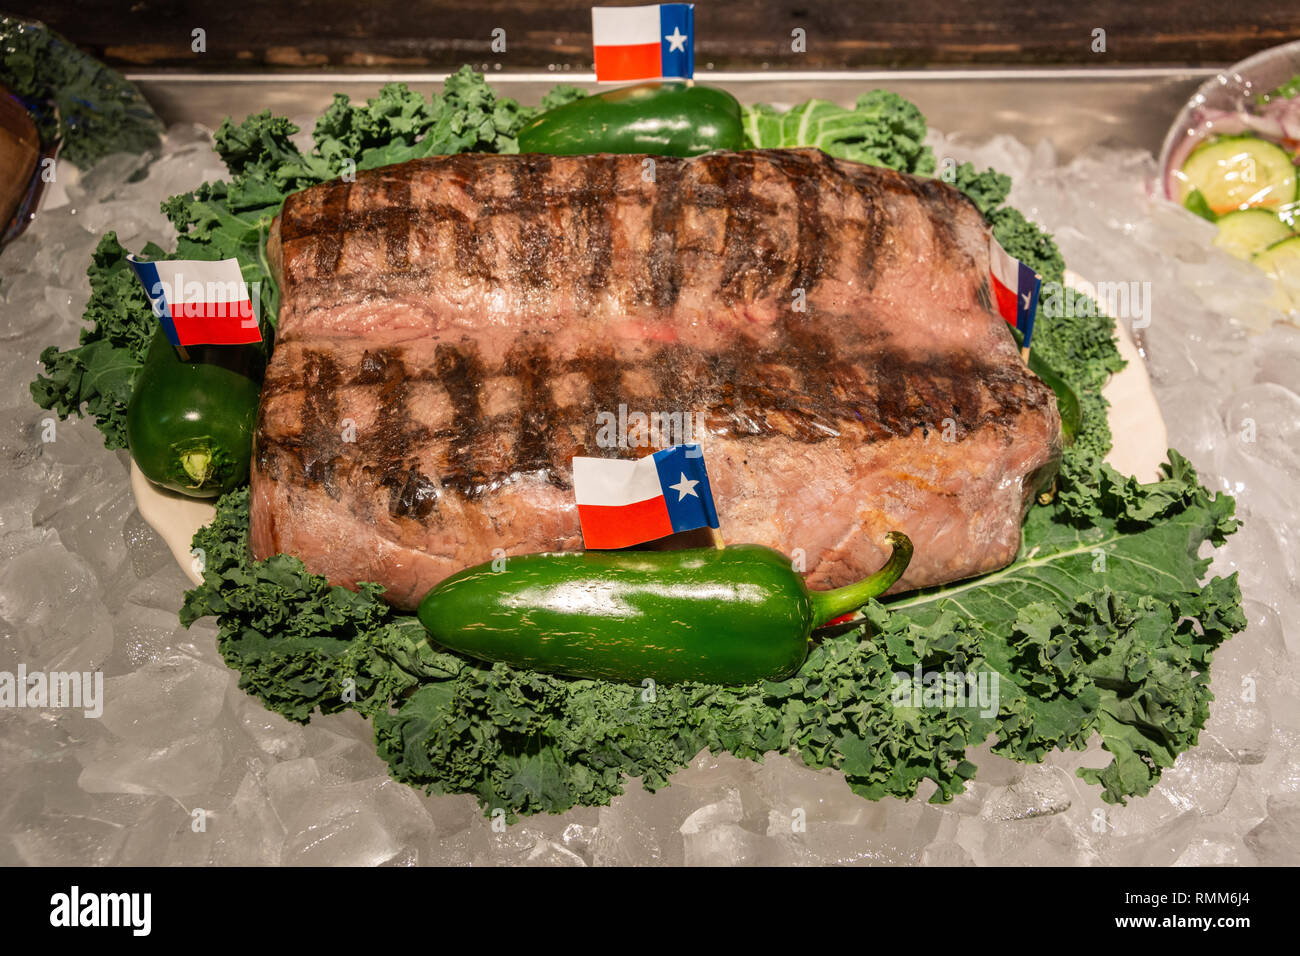 Amarillo, Texas, États-Unis d'Amérique - 1 janvier 2017. 72oz steak légendaire gratuitement offert gratuitement si mangé en moins d'une heure à Big Texan Steak Banque D'Images